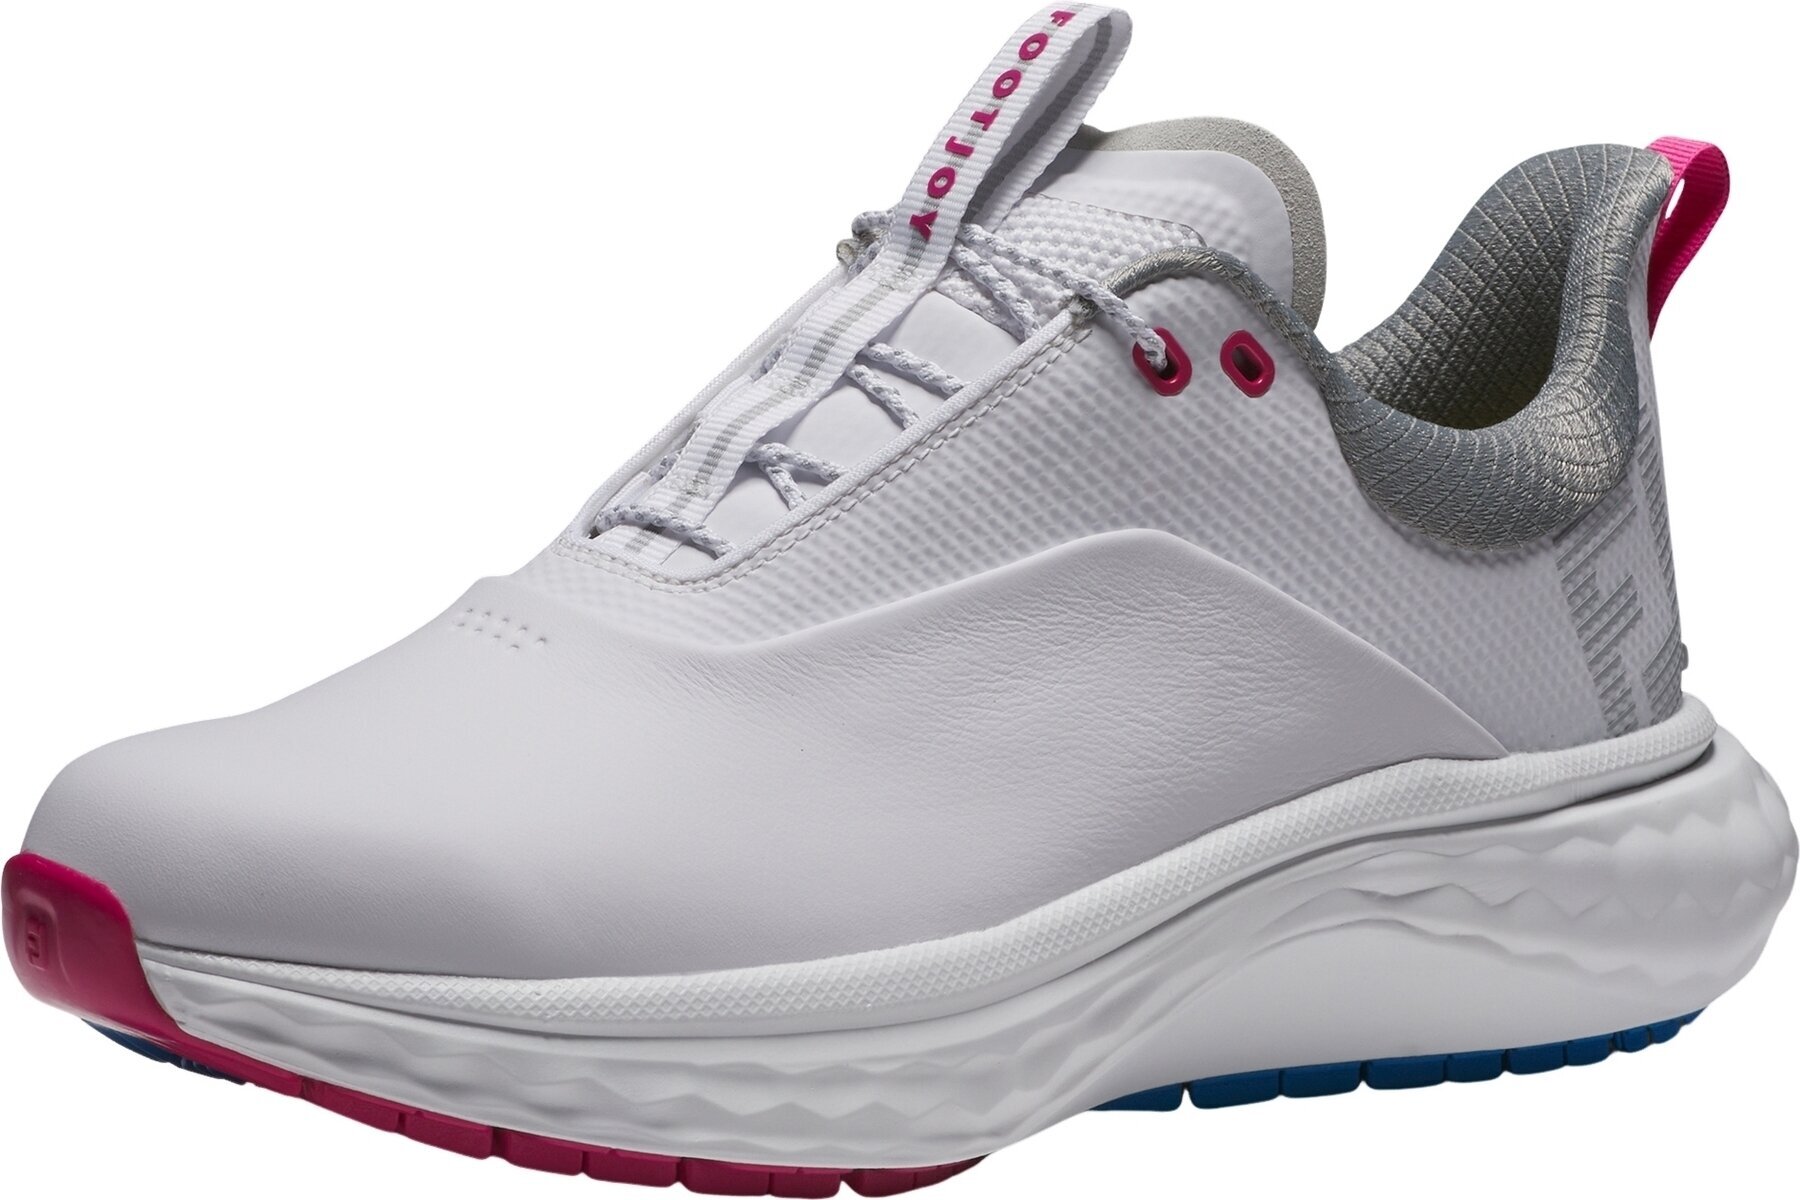 Calçado de golfe para mulher Footjoy Quantum Womens Golf Shoes White/Blue/Pink 36,5